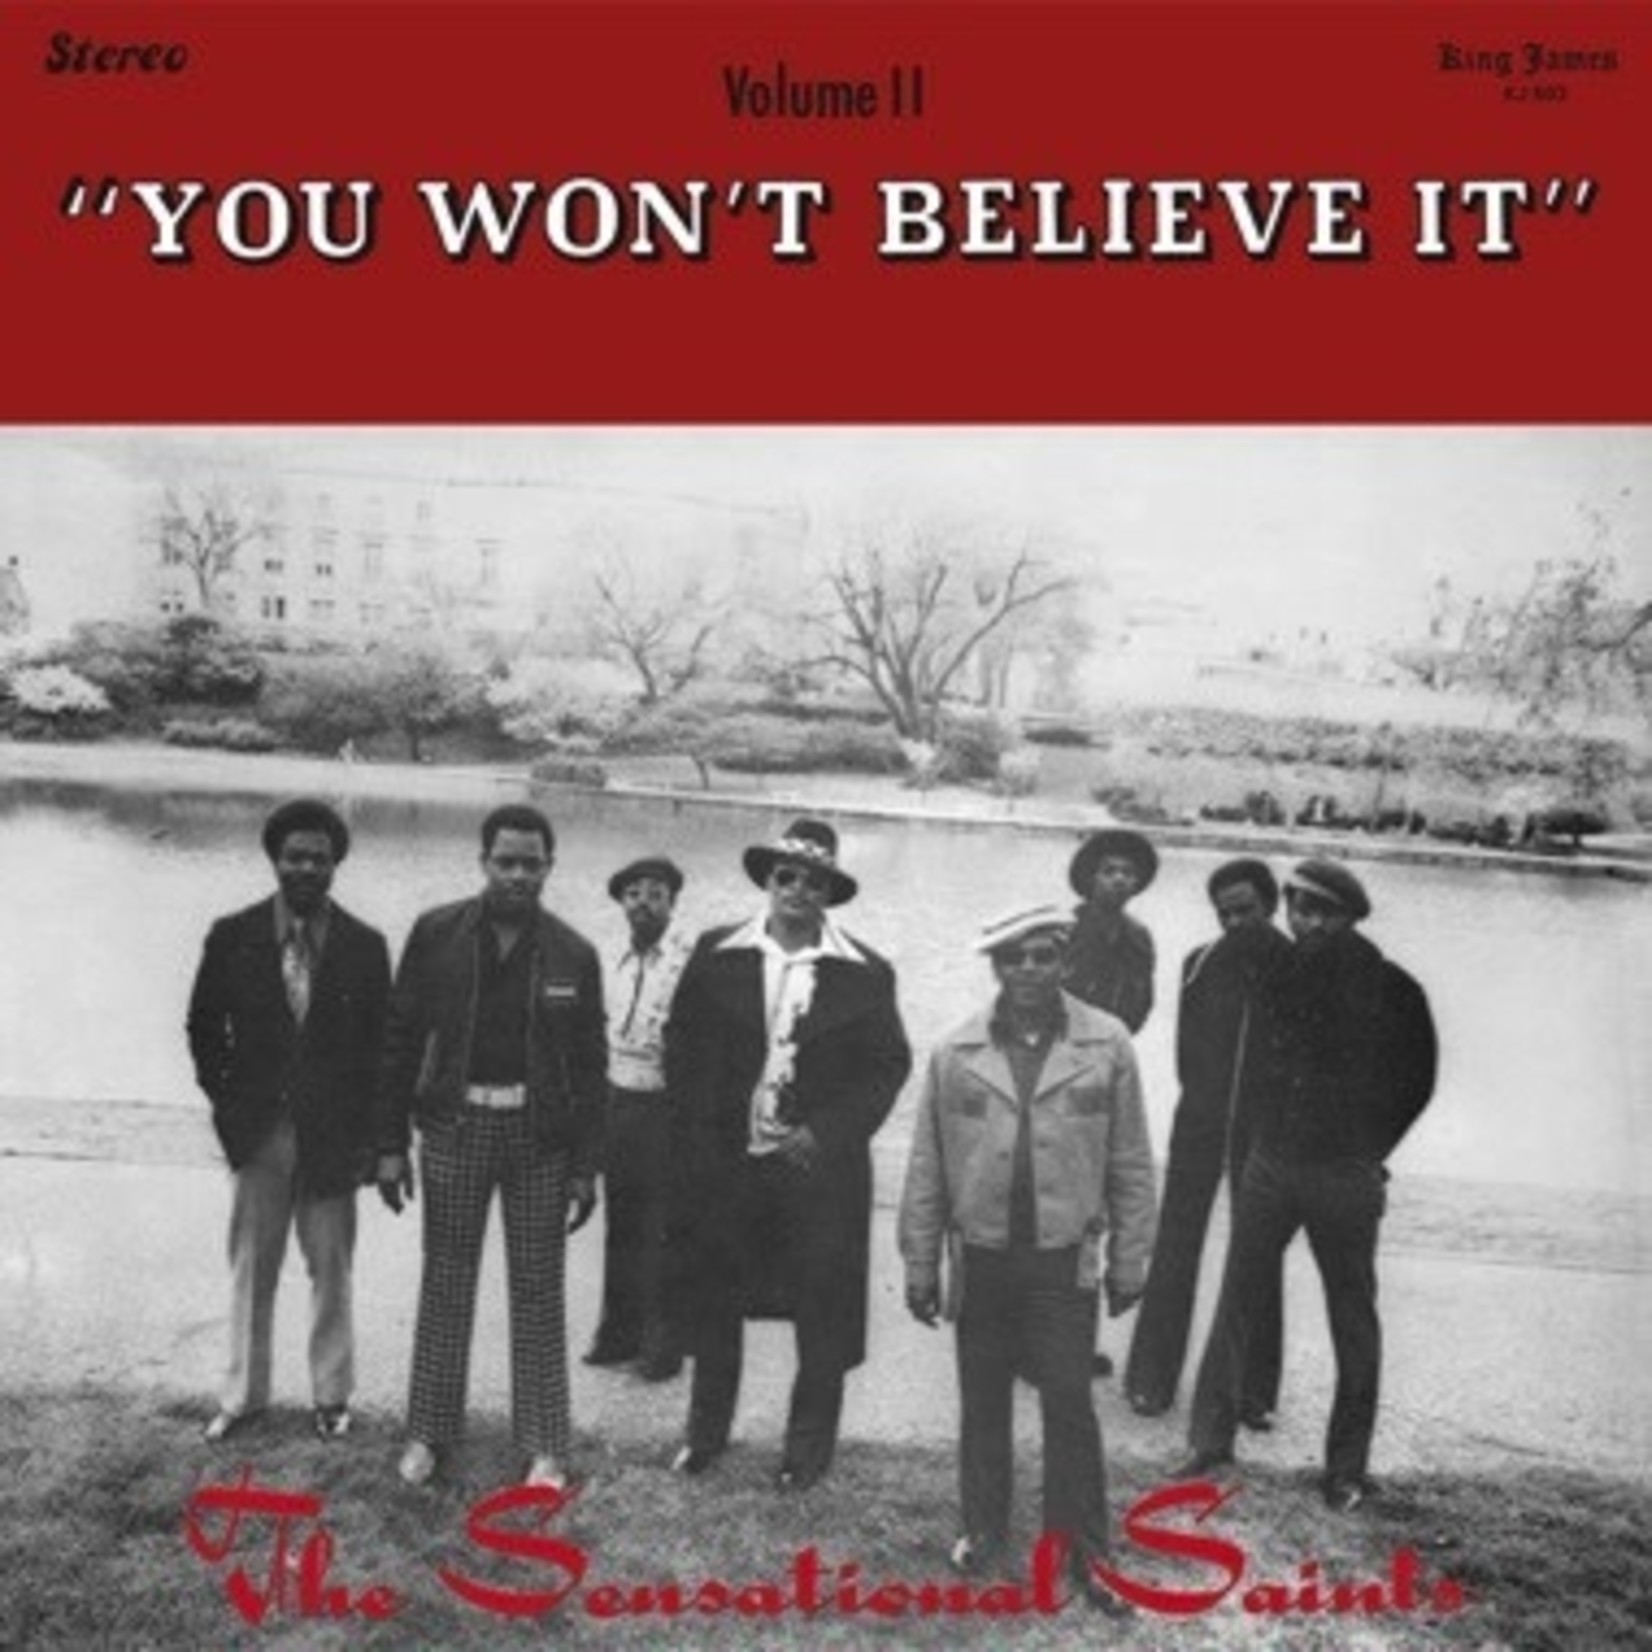 Numero Group Sensational Saints - You Won't Believe It (LP)